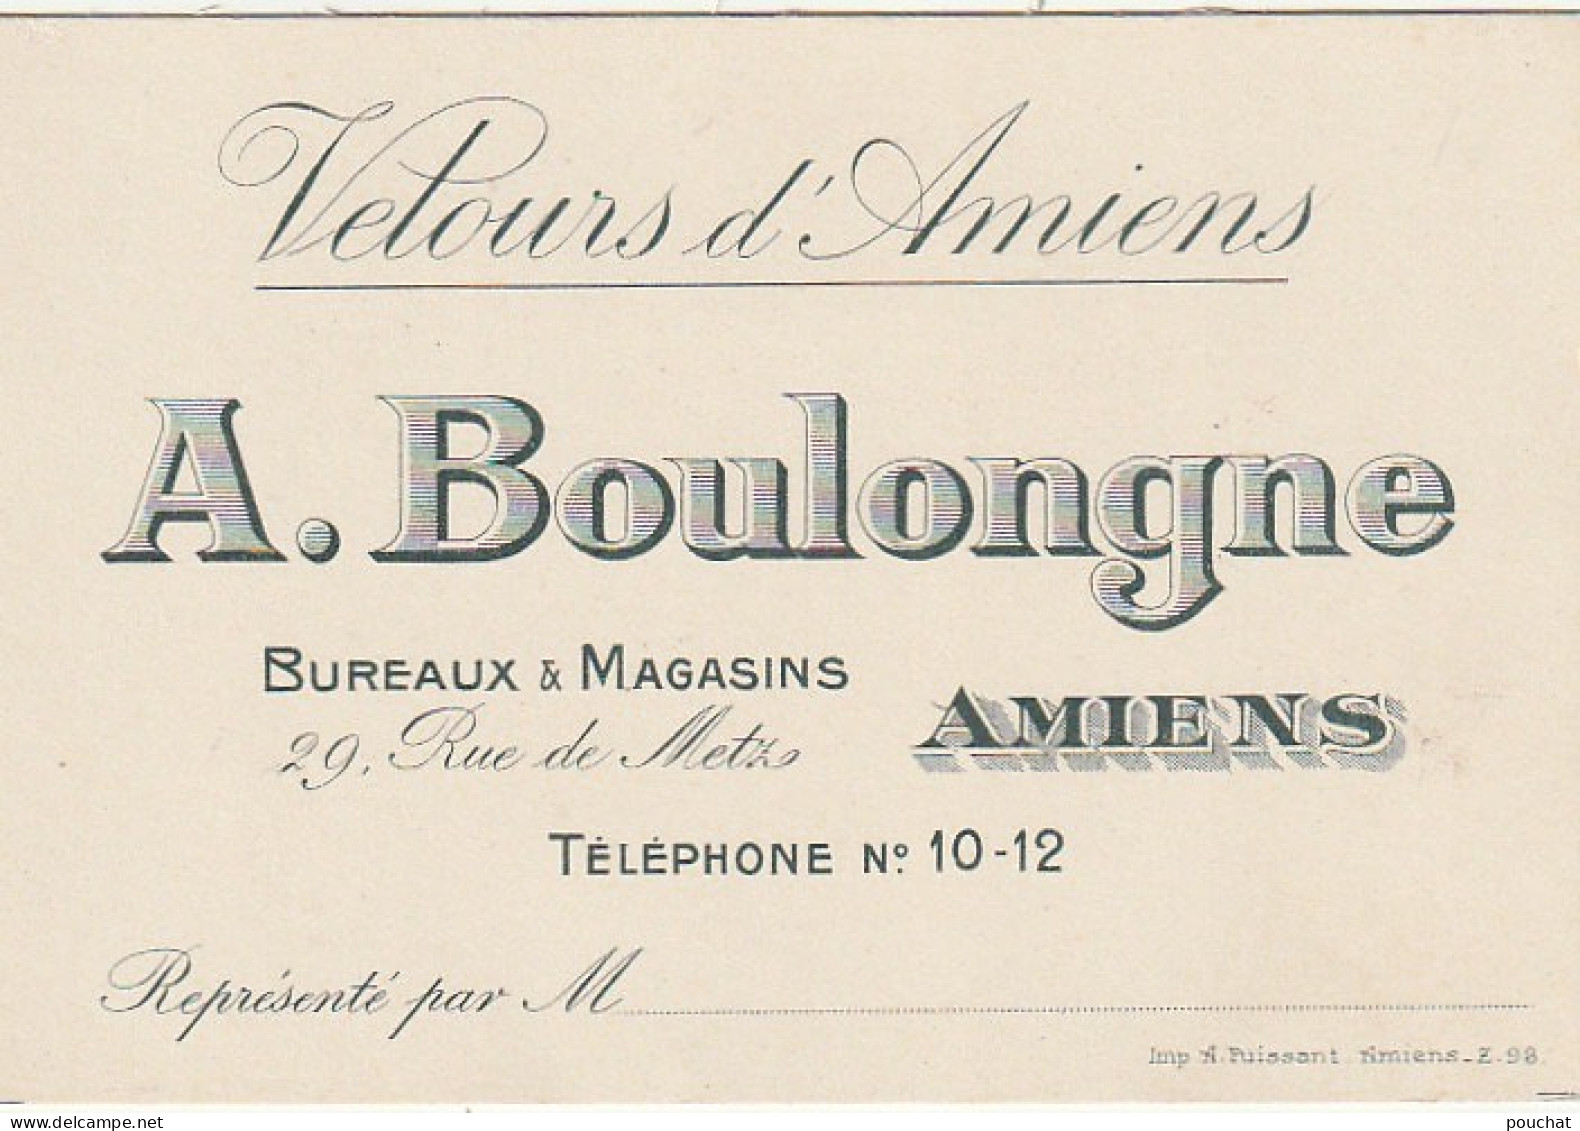 KO 6- (80) " VELOURS D' AMIENS " - A . BOULONGNE - BUREAUX & MAGASINS , RUE DE METZ , AMIENS- CARTE DE VISITE - 2 SCANS - Cartes De Visite